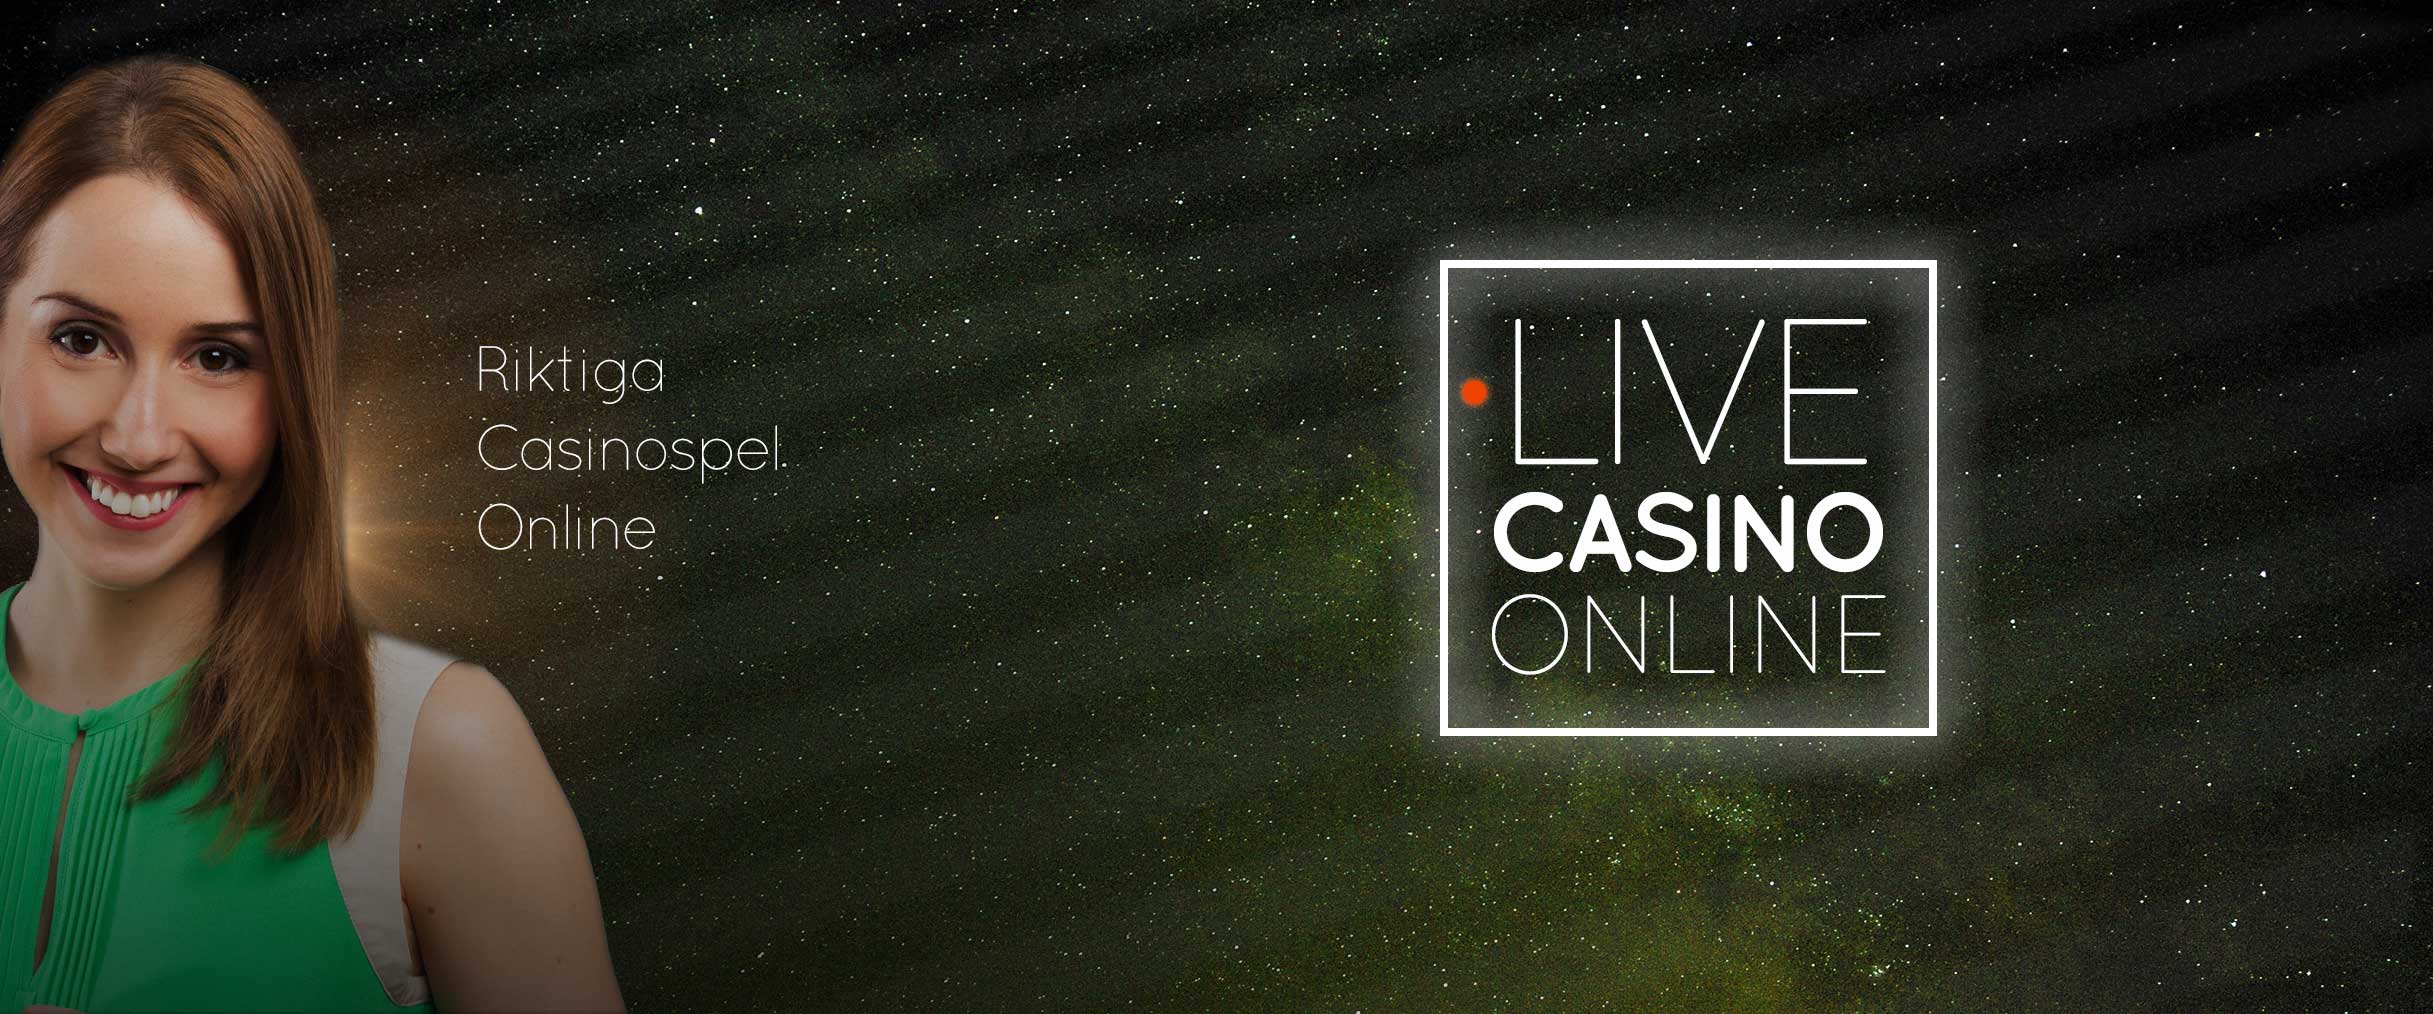 live casino online header